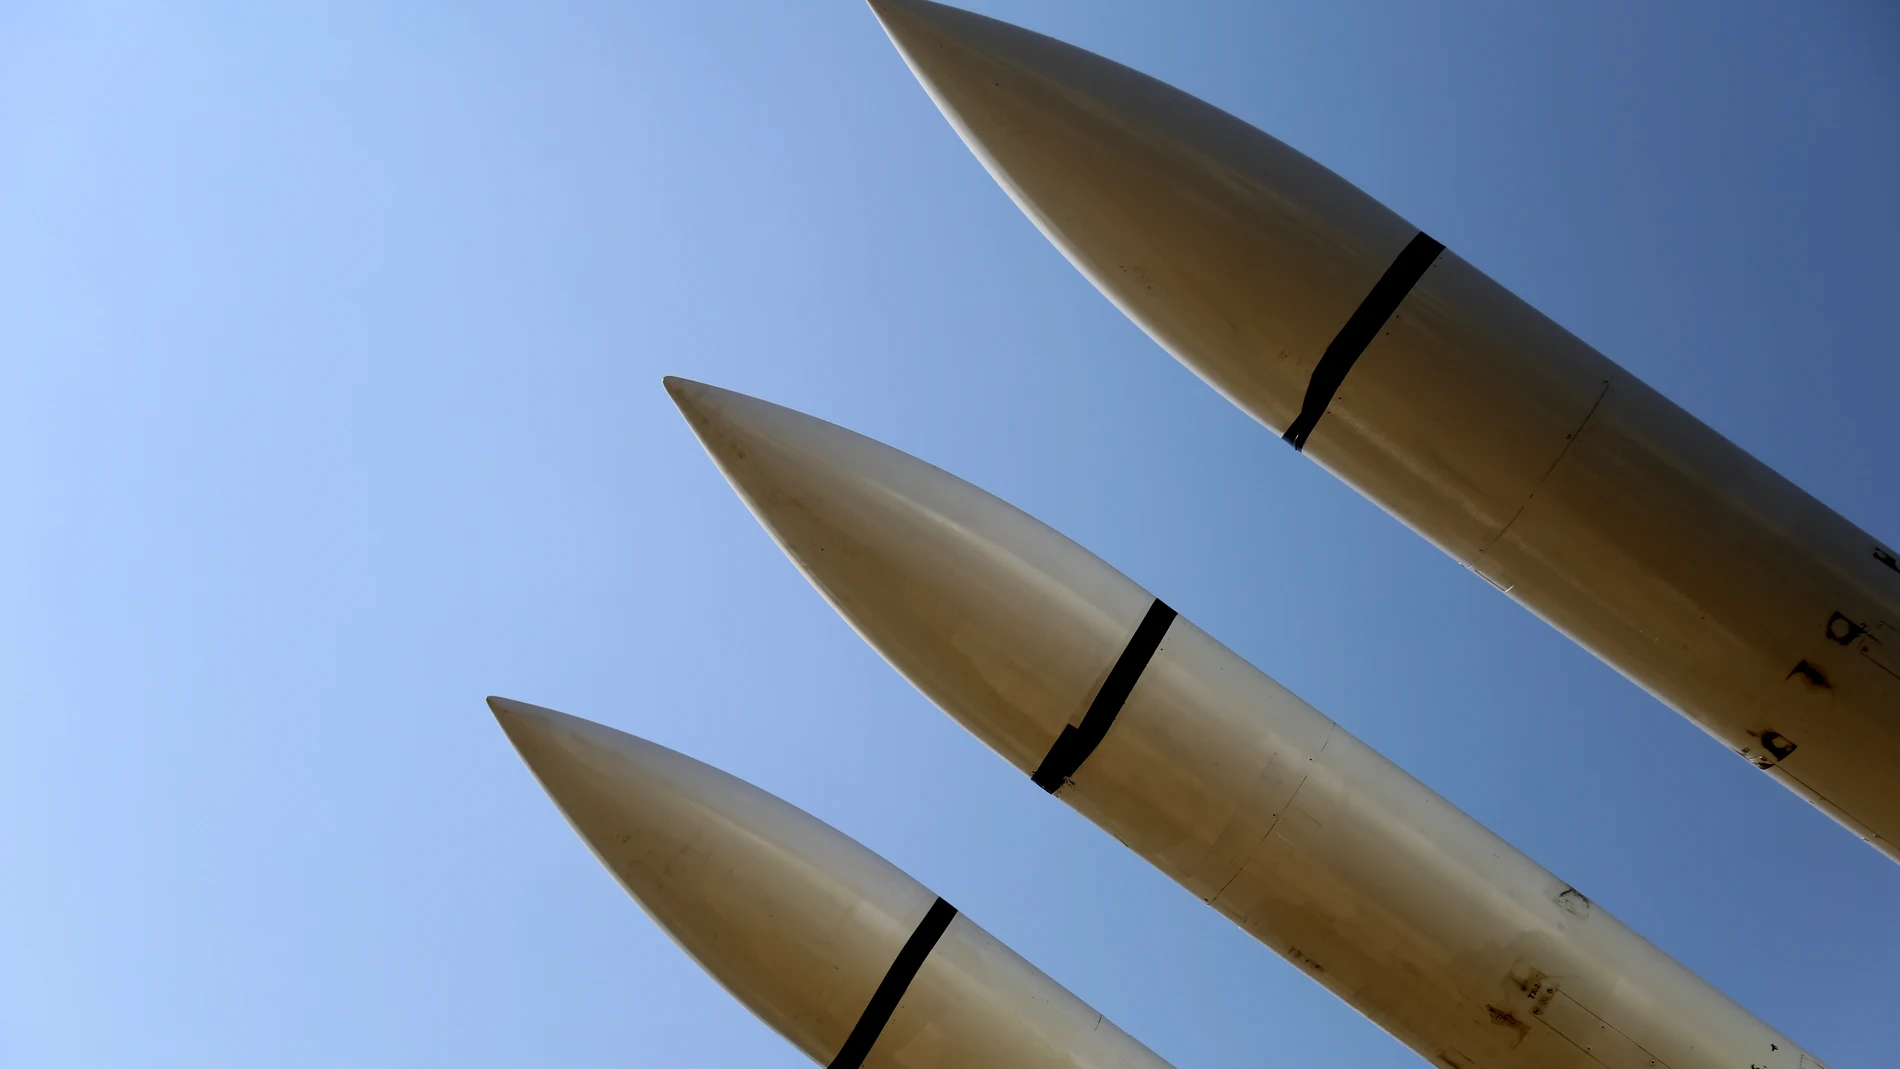 EEUU.- Estados Unidos sanciona a entidades que contribuyen a la proliferación de misiles balísticos